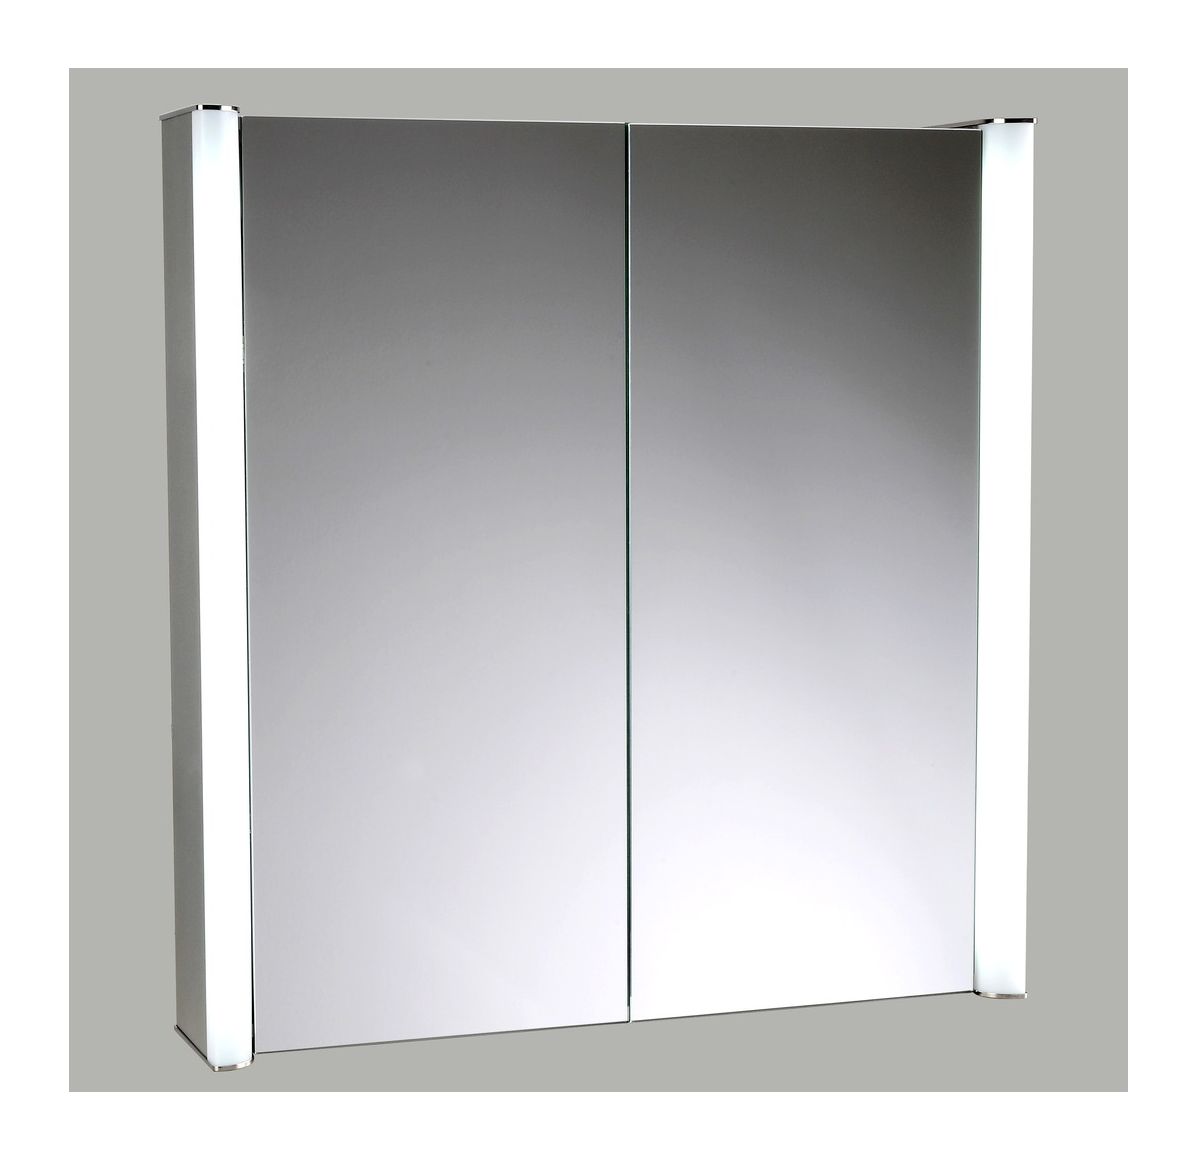 шкаф с зеркалом в ванную с подсветкой 80 см